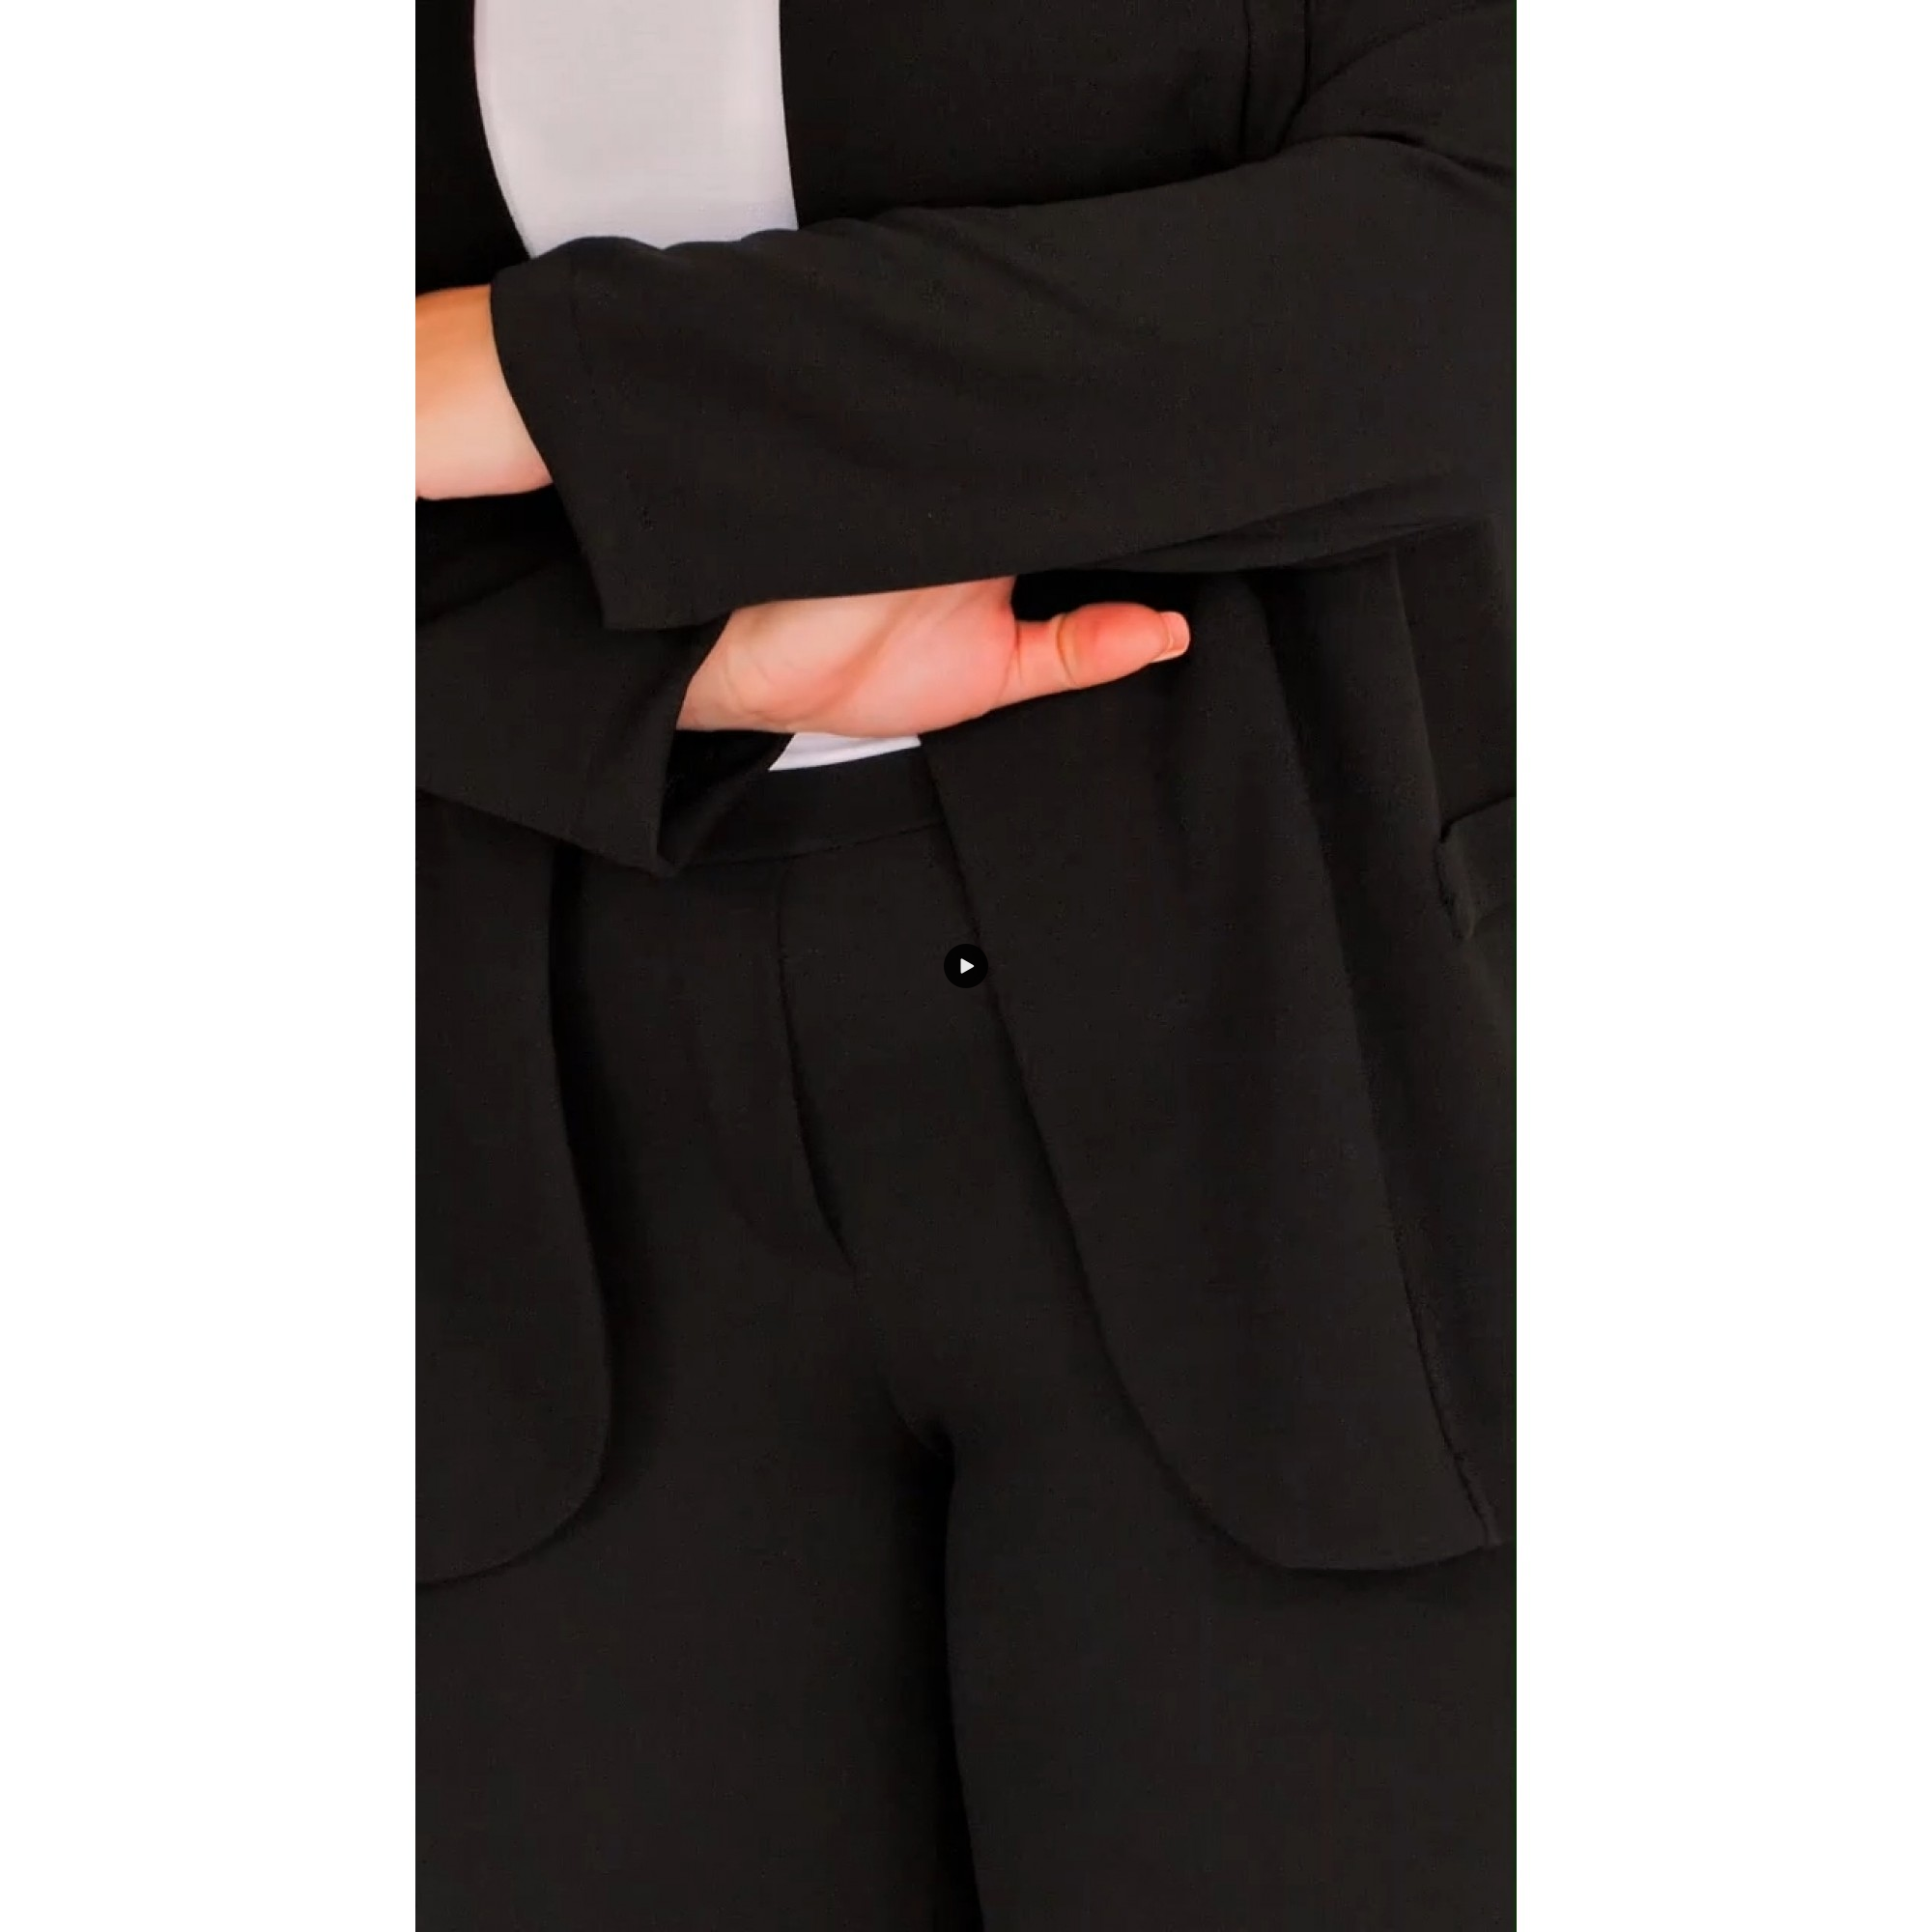 Κοστούμι με σακάκι και παντελονοκολάν κρεπ μαύρο